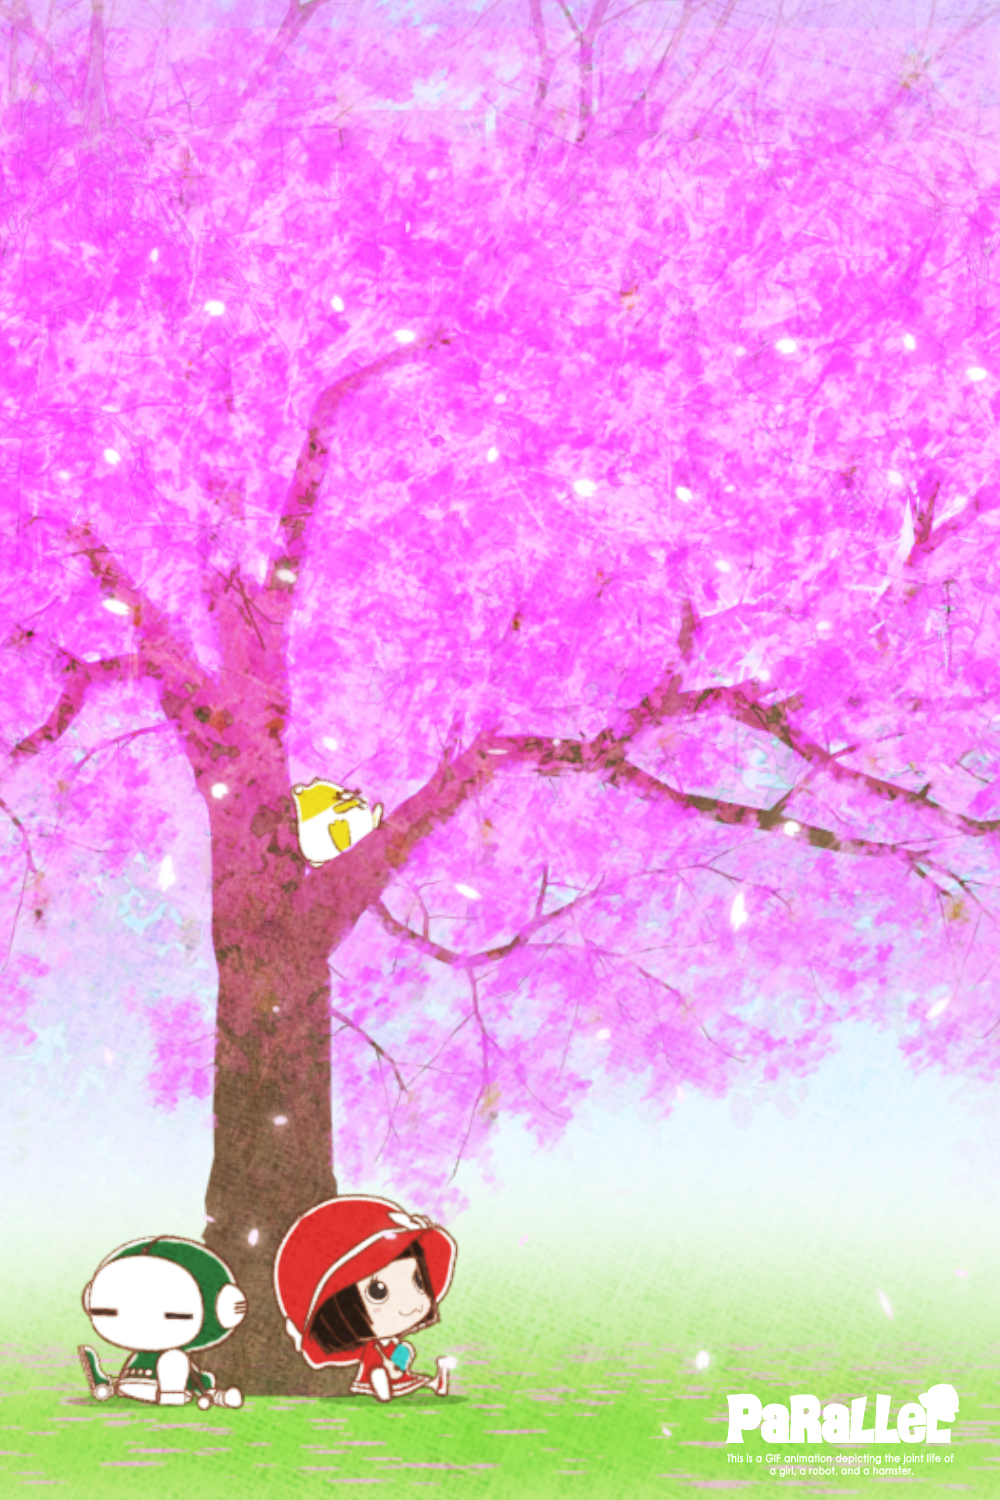 桜の木の下にいるキャラクターのイラスト